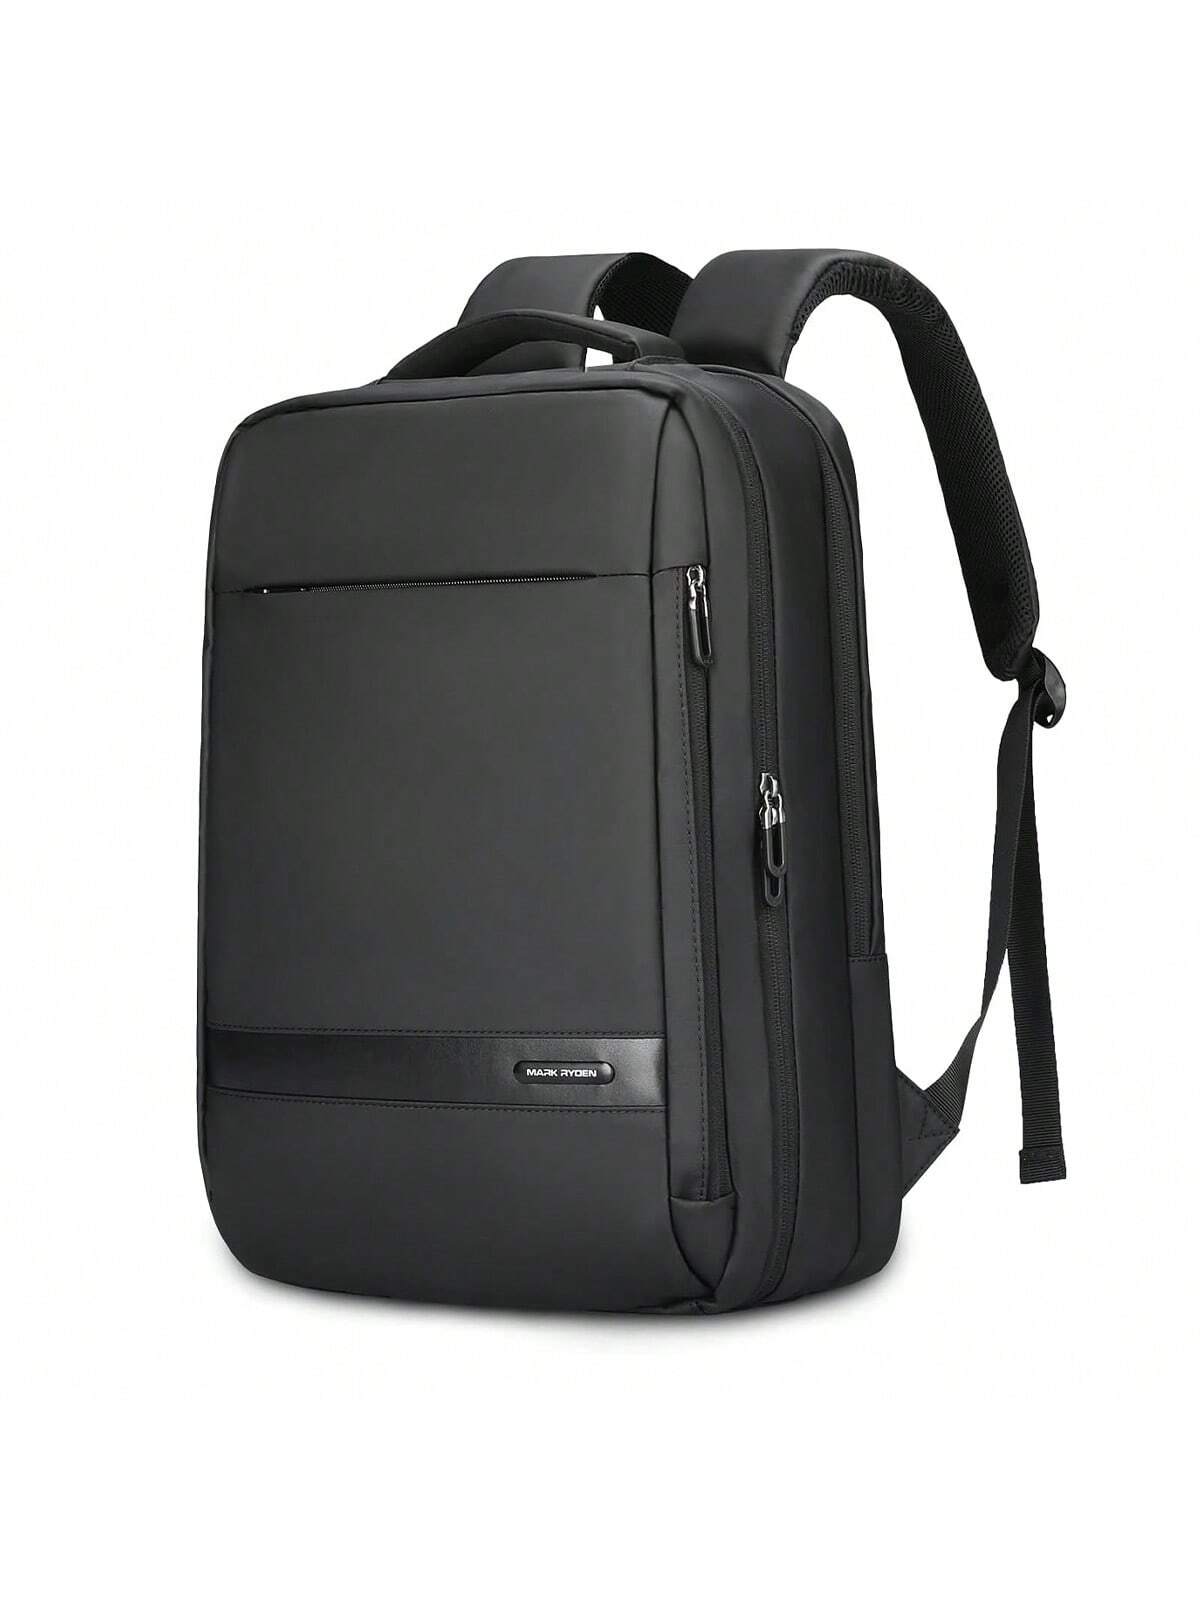 MARK RYDEN Anti-Thief USB рюкзак мужской 15, черный мужской деловой рюкзак с ножом уличный вместительный дорожный водонепроницаемый ранец для ноутбука с usb зарядкой